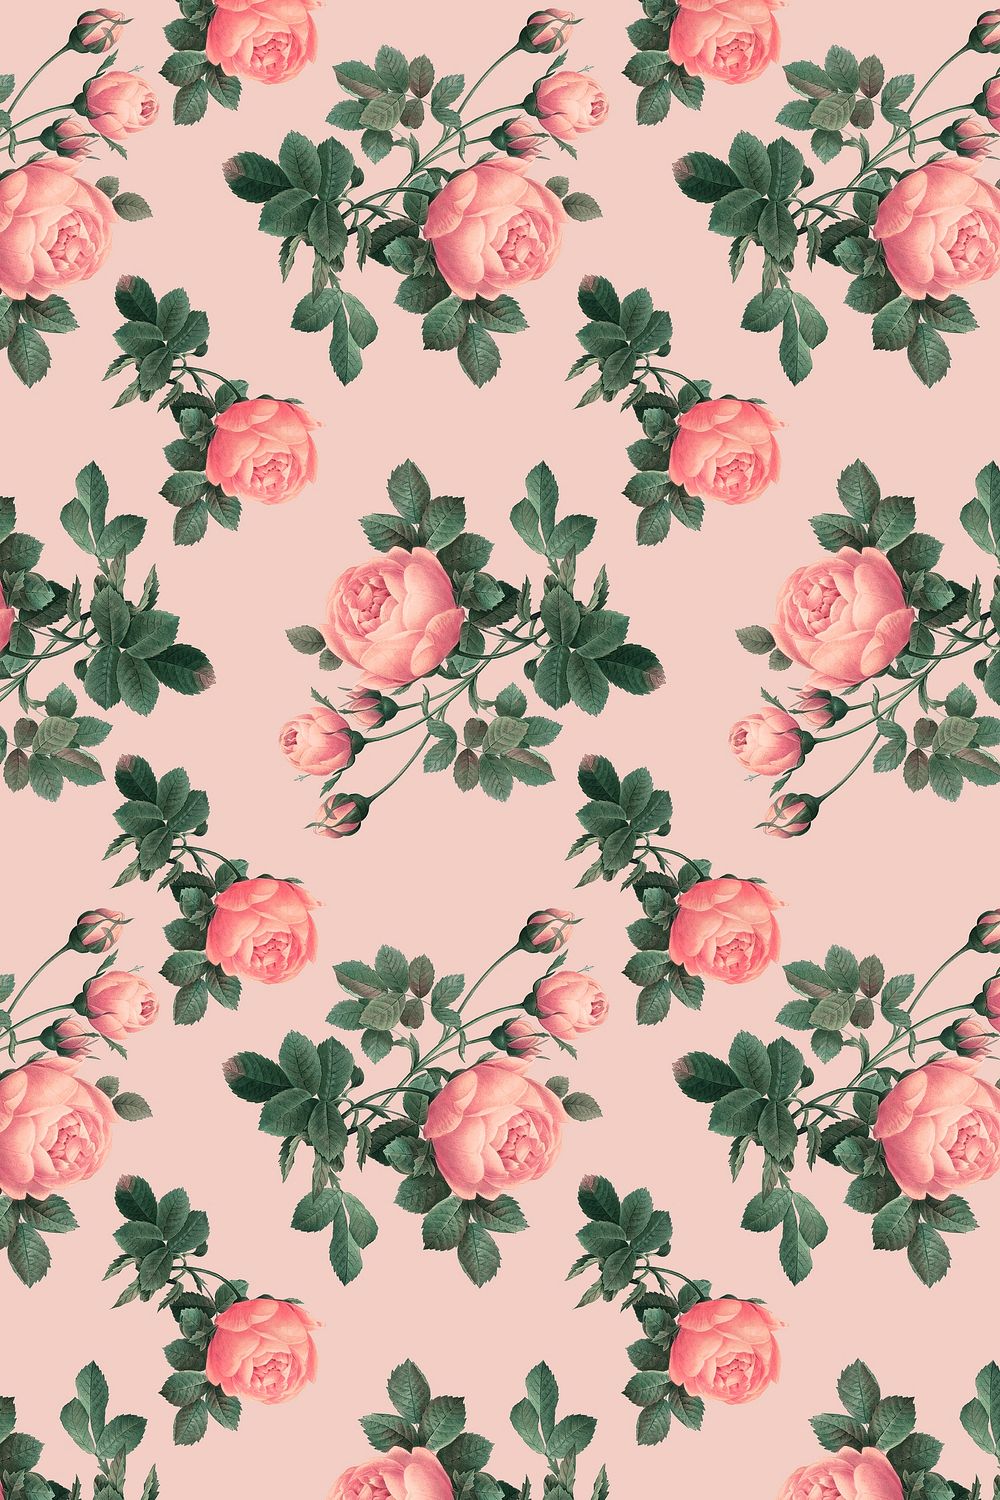 Pink English rose pattern on a crepe | Premium Photo - rawpixel